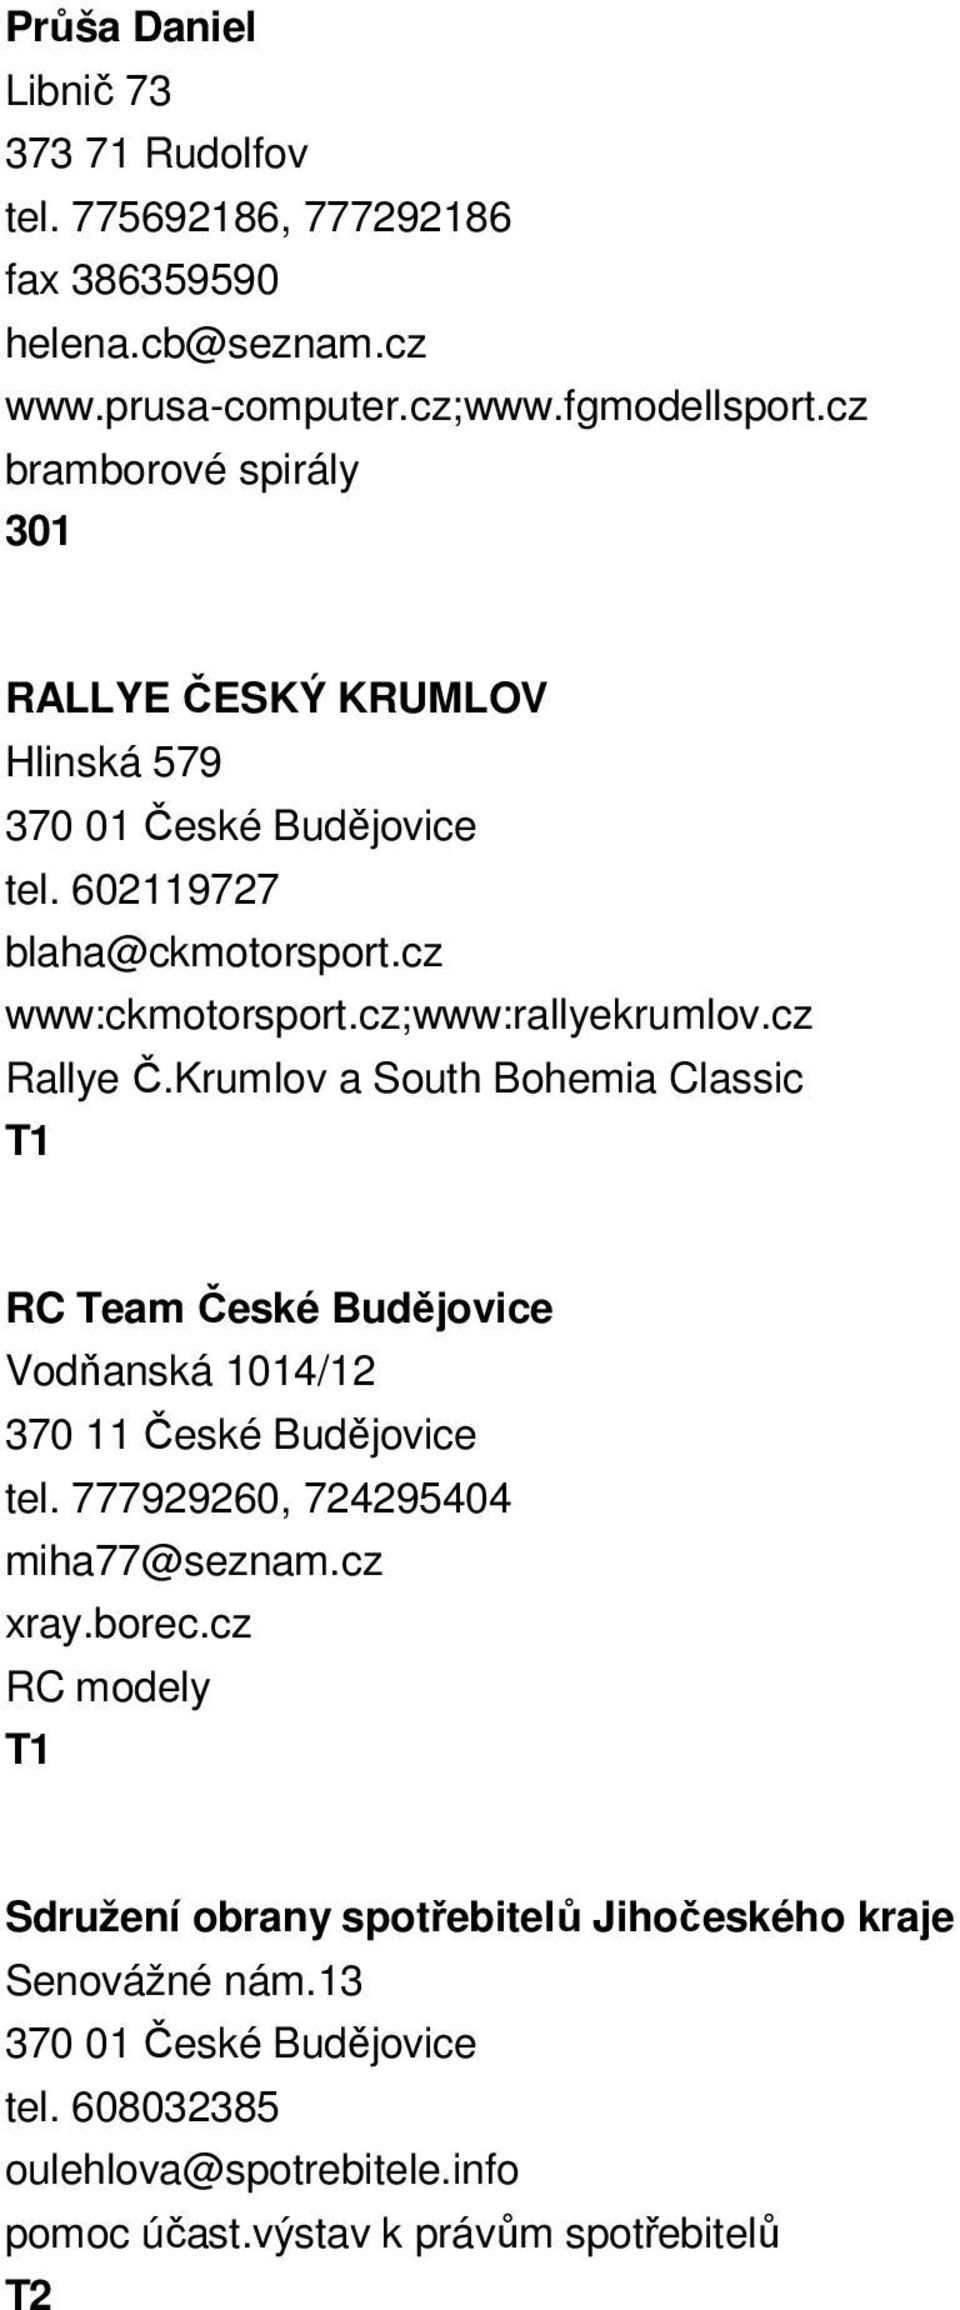 Krumlov a South Bohemia Classic RC Team České Budějovice Vodňanská 1014/12 370 11 České Budějovice tel. 777929260, 724295404 miha77@seznam.cz xray.